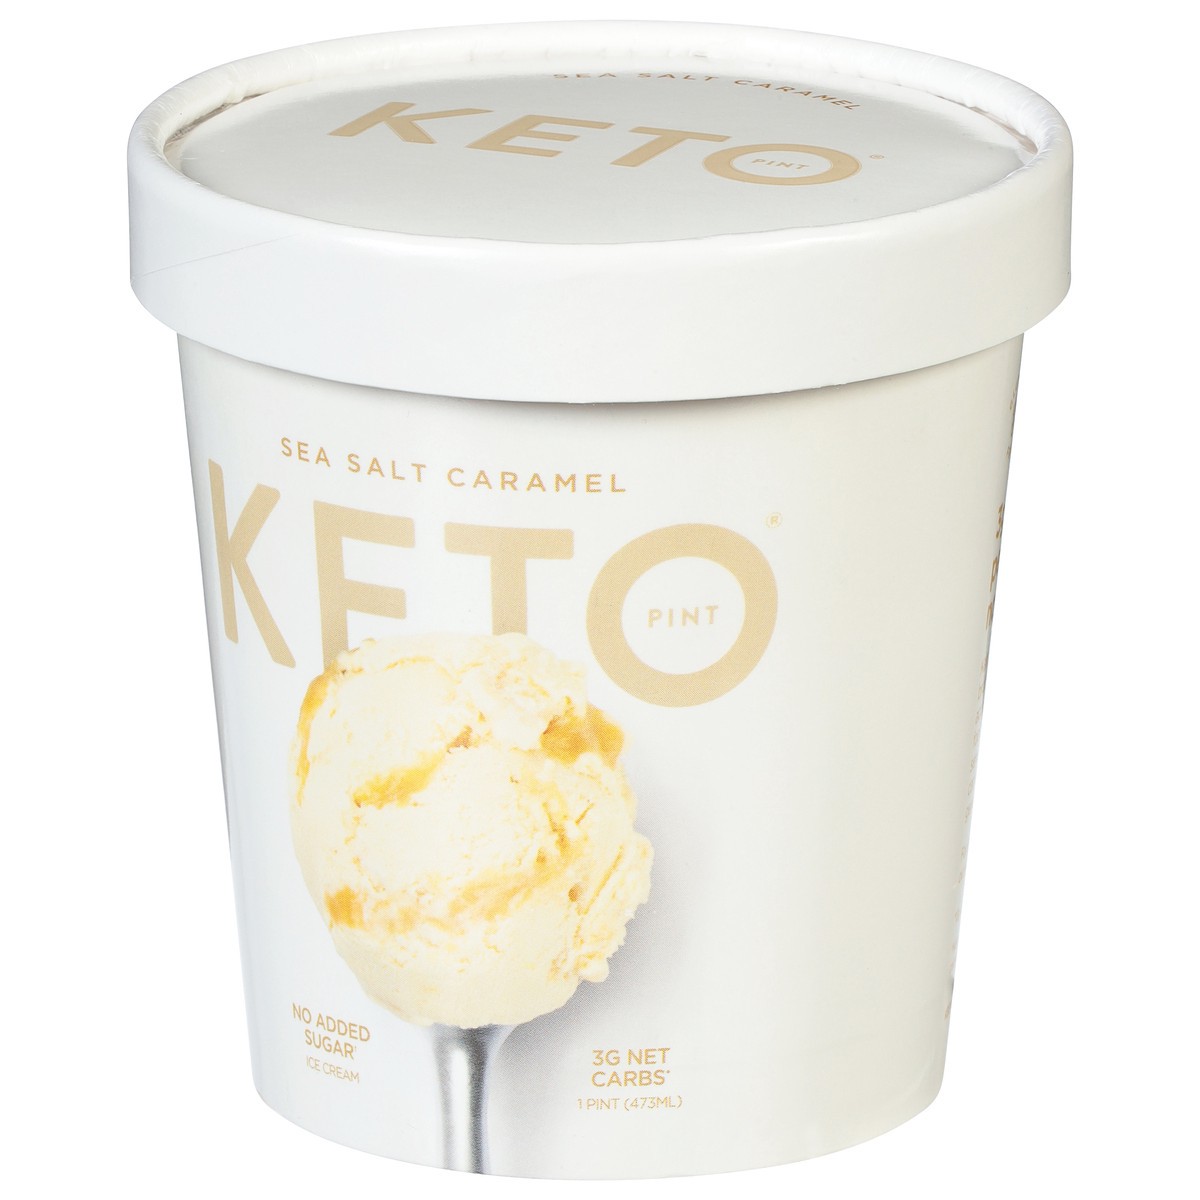 slide 3 of 9, Keto Pint Salted Caramel Ice Cream 1 pt, 1 pint